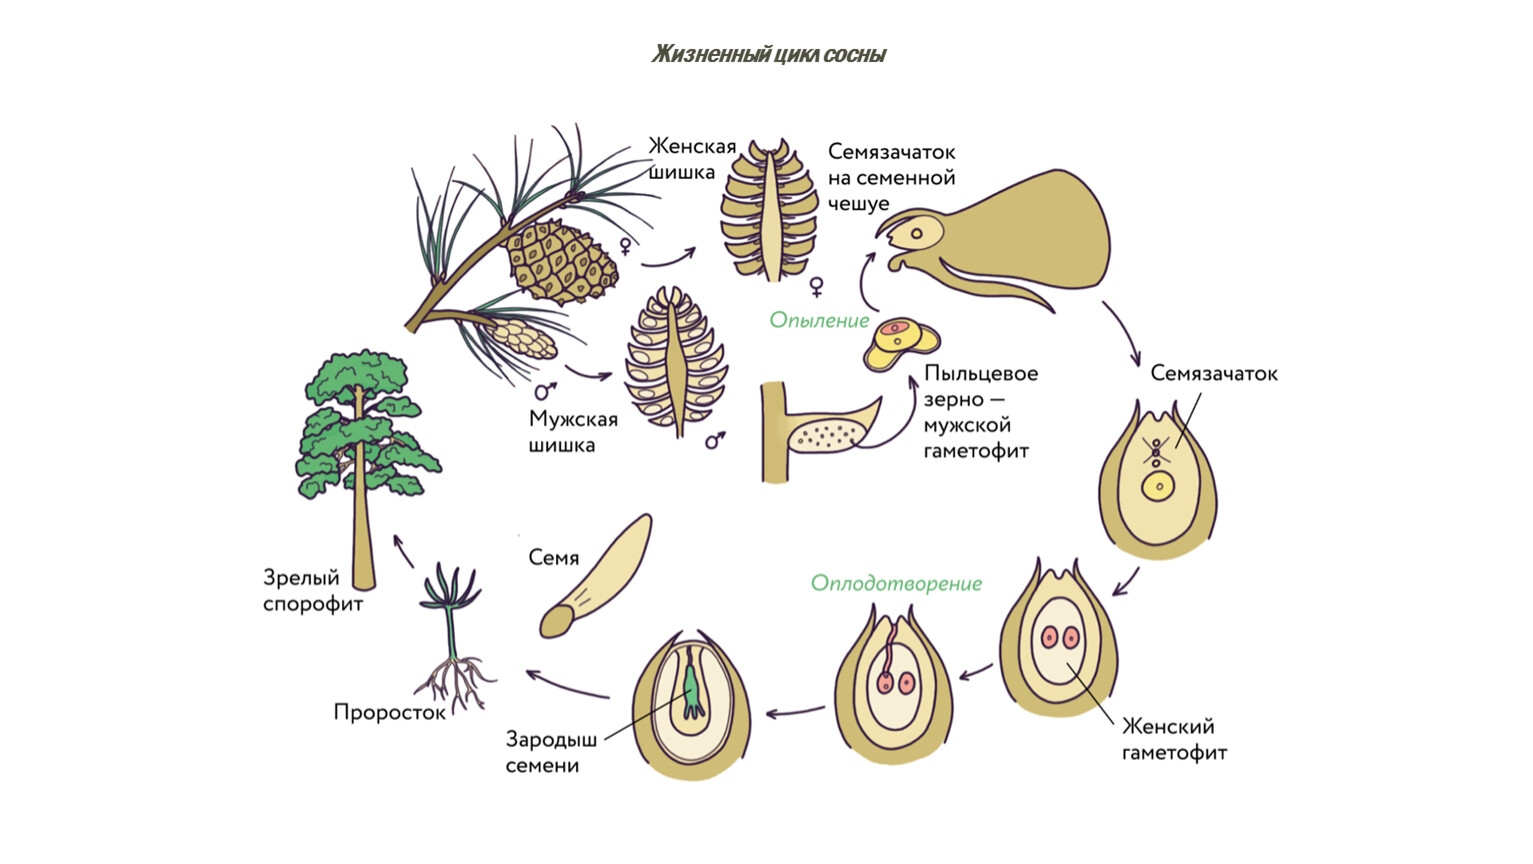 Хвойные егэ. Цикл развития сосны. Жизненный цикл растений схема ЕГЭ. Микроспорогенез голосеменных растений. Строение семязачатка голосеменных.